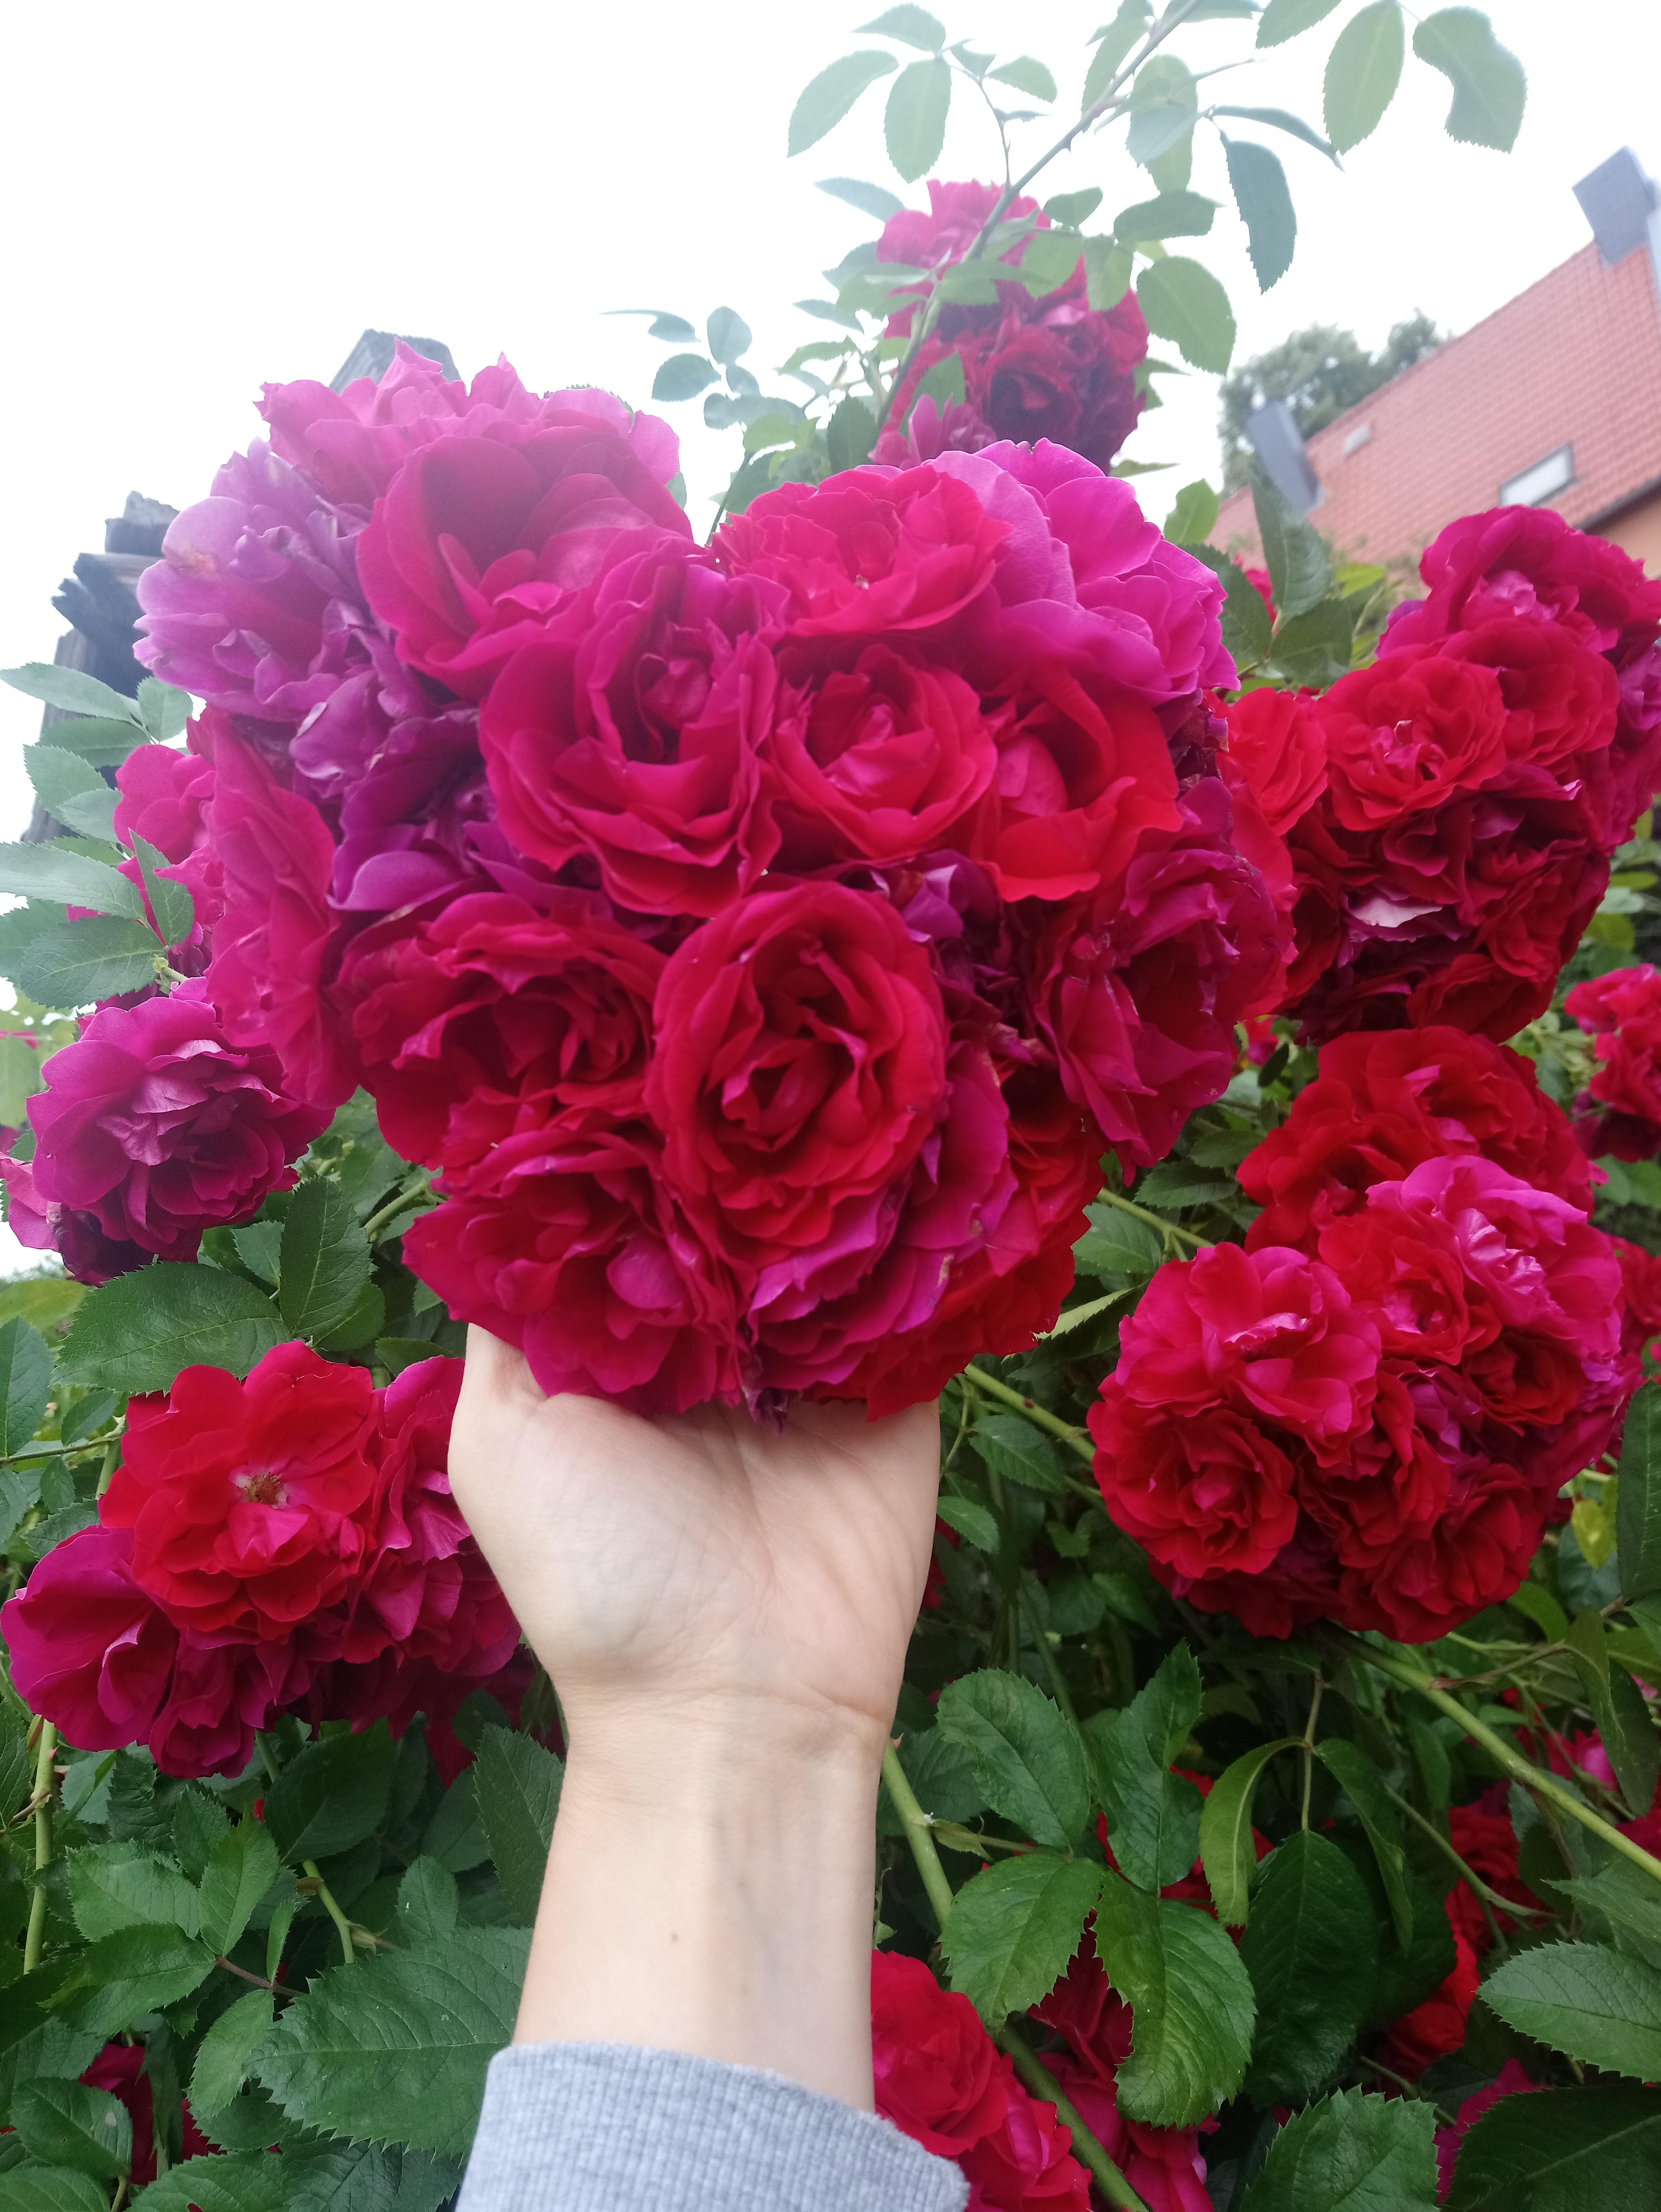 Wenn das nicht Liebe ist 💜
#Rosen #Garten